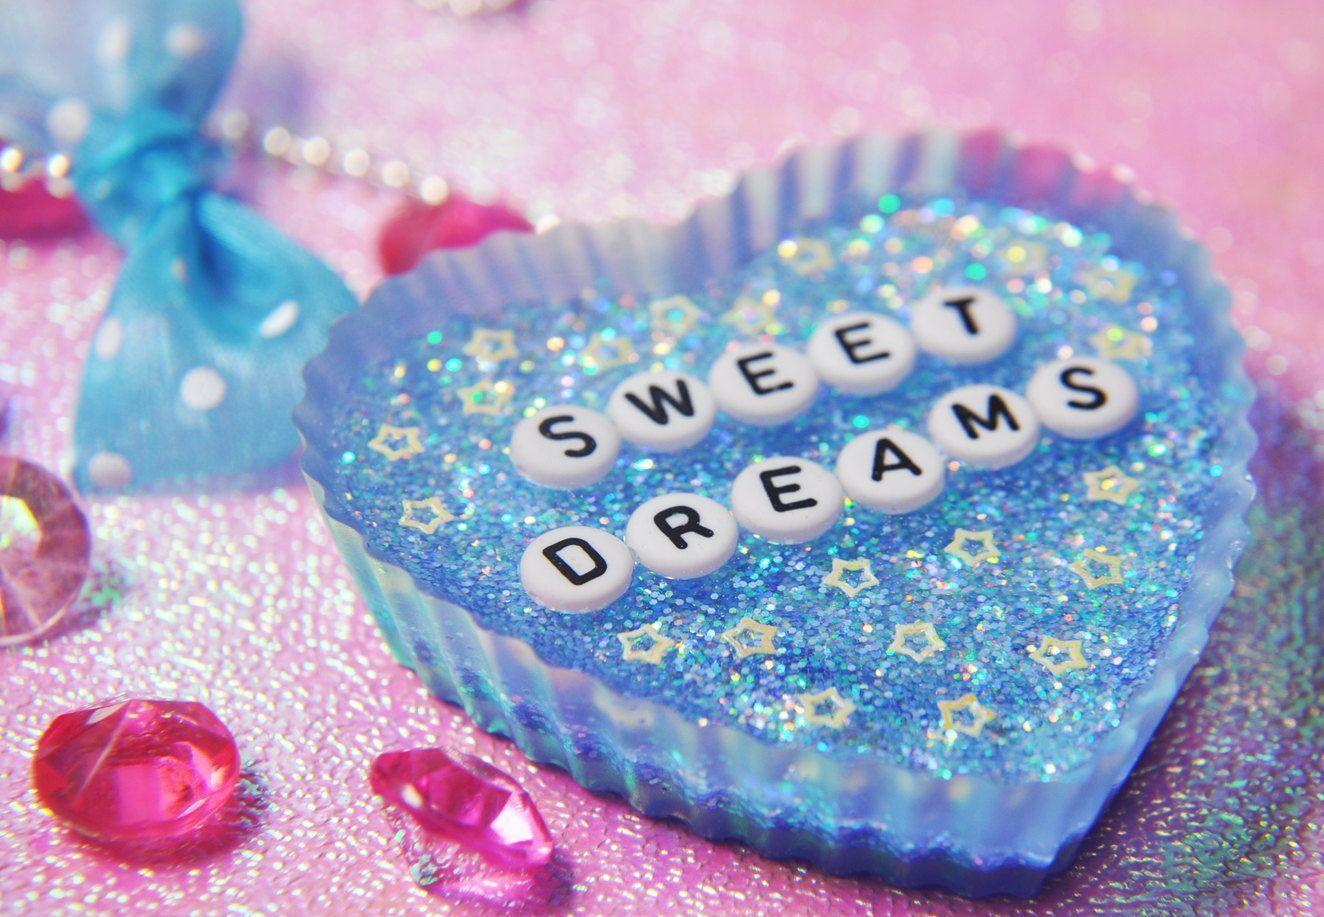 Sweet dreams pmv